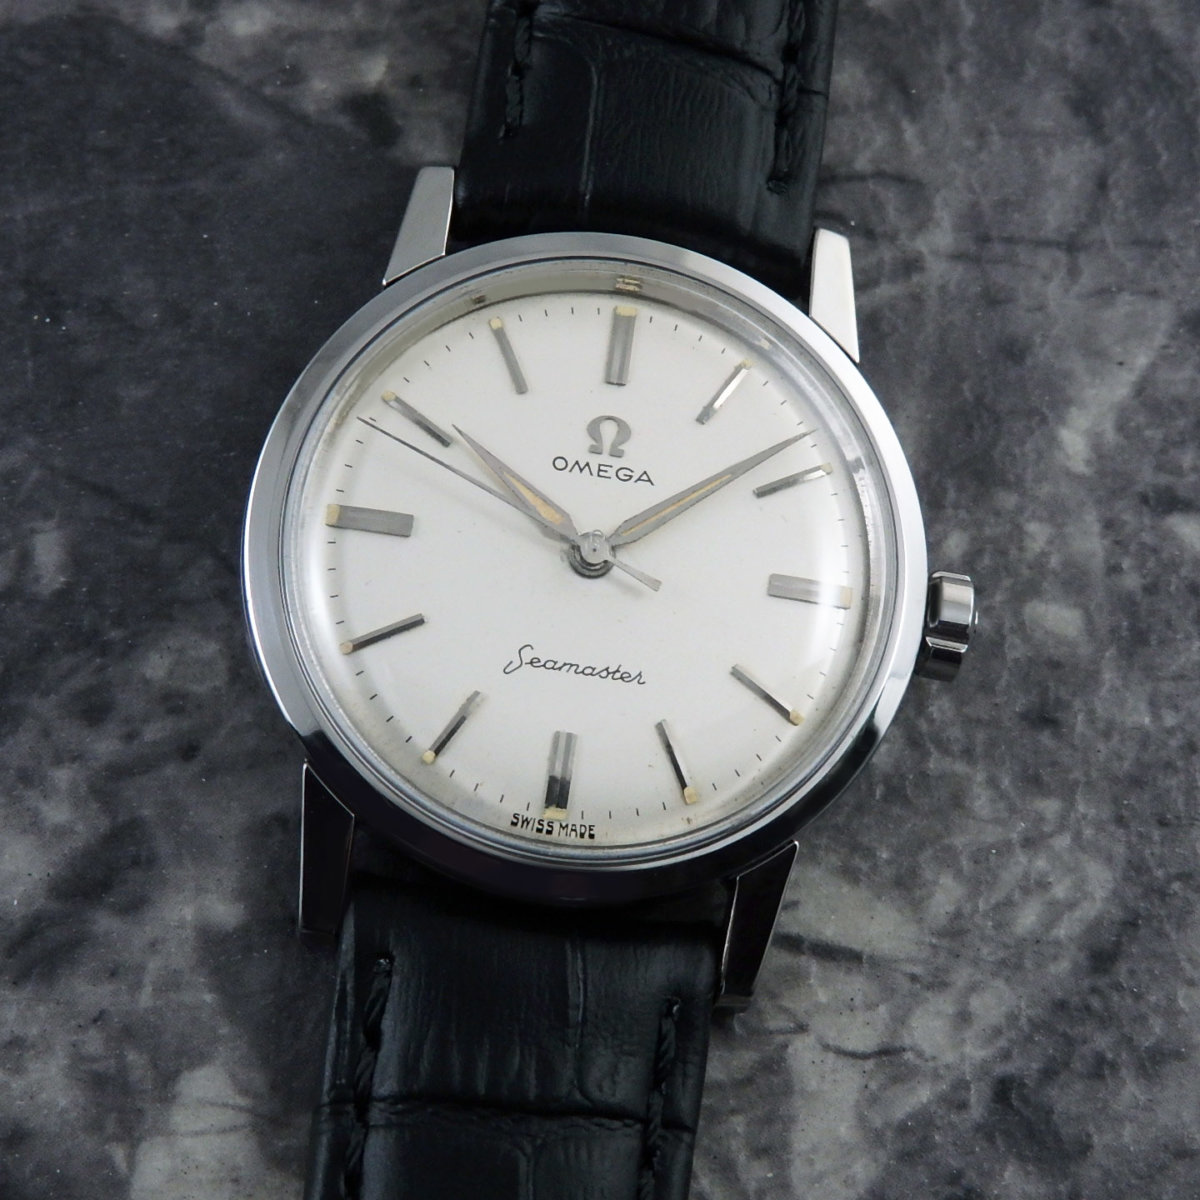 1950S OMEGA シーマスター VINTAGE WATCH | アンティーク時計の販売